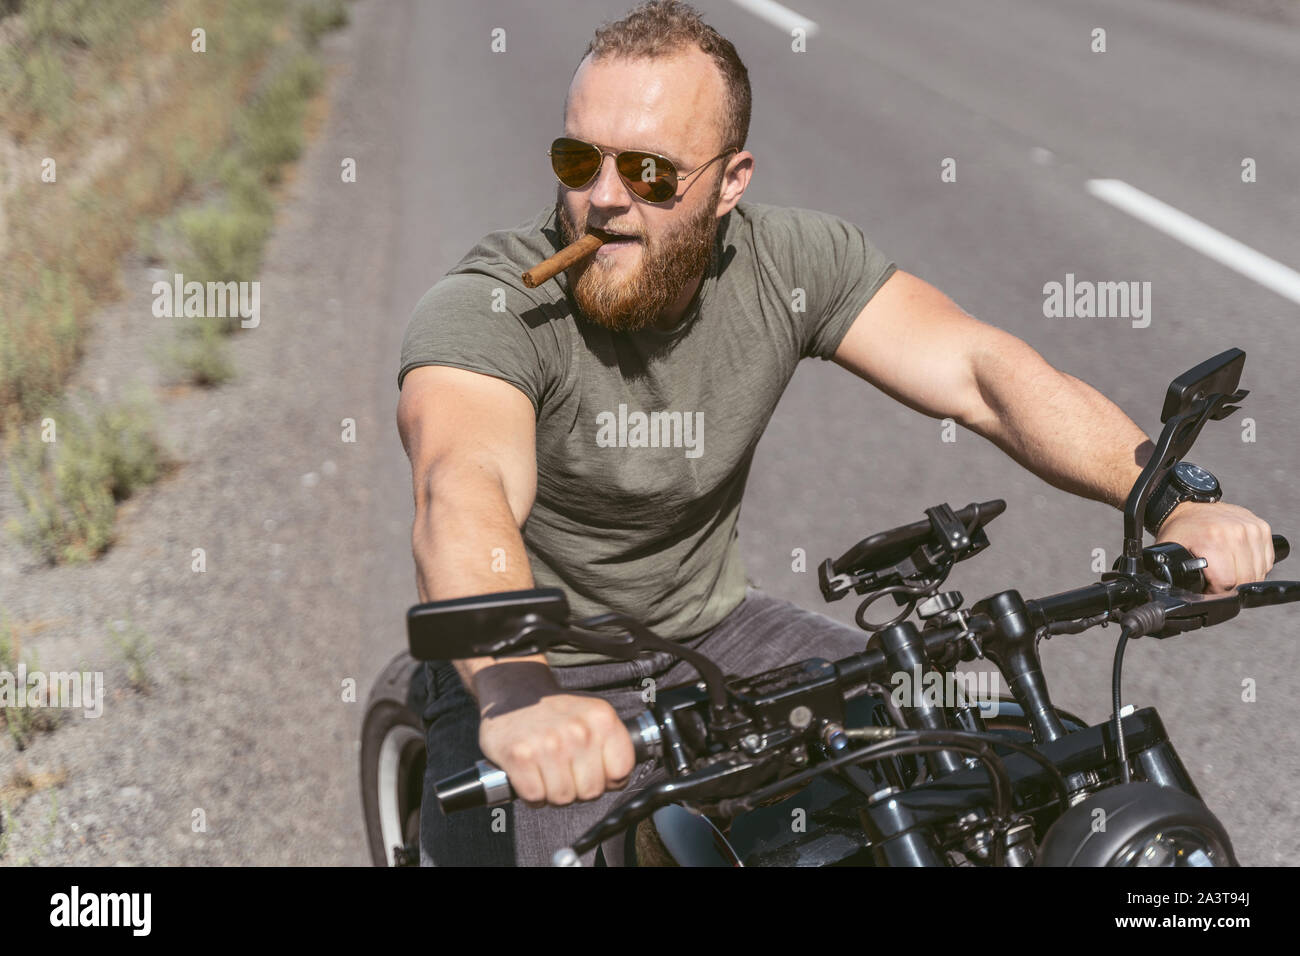 Bello barbuto biker seduto sulla bici sigar fumare sulla strada Foto Stock